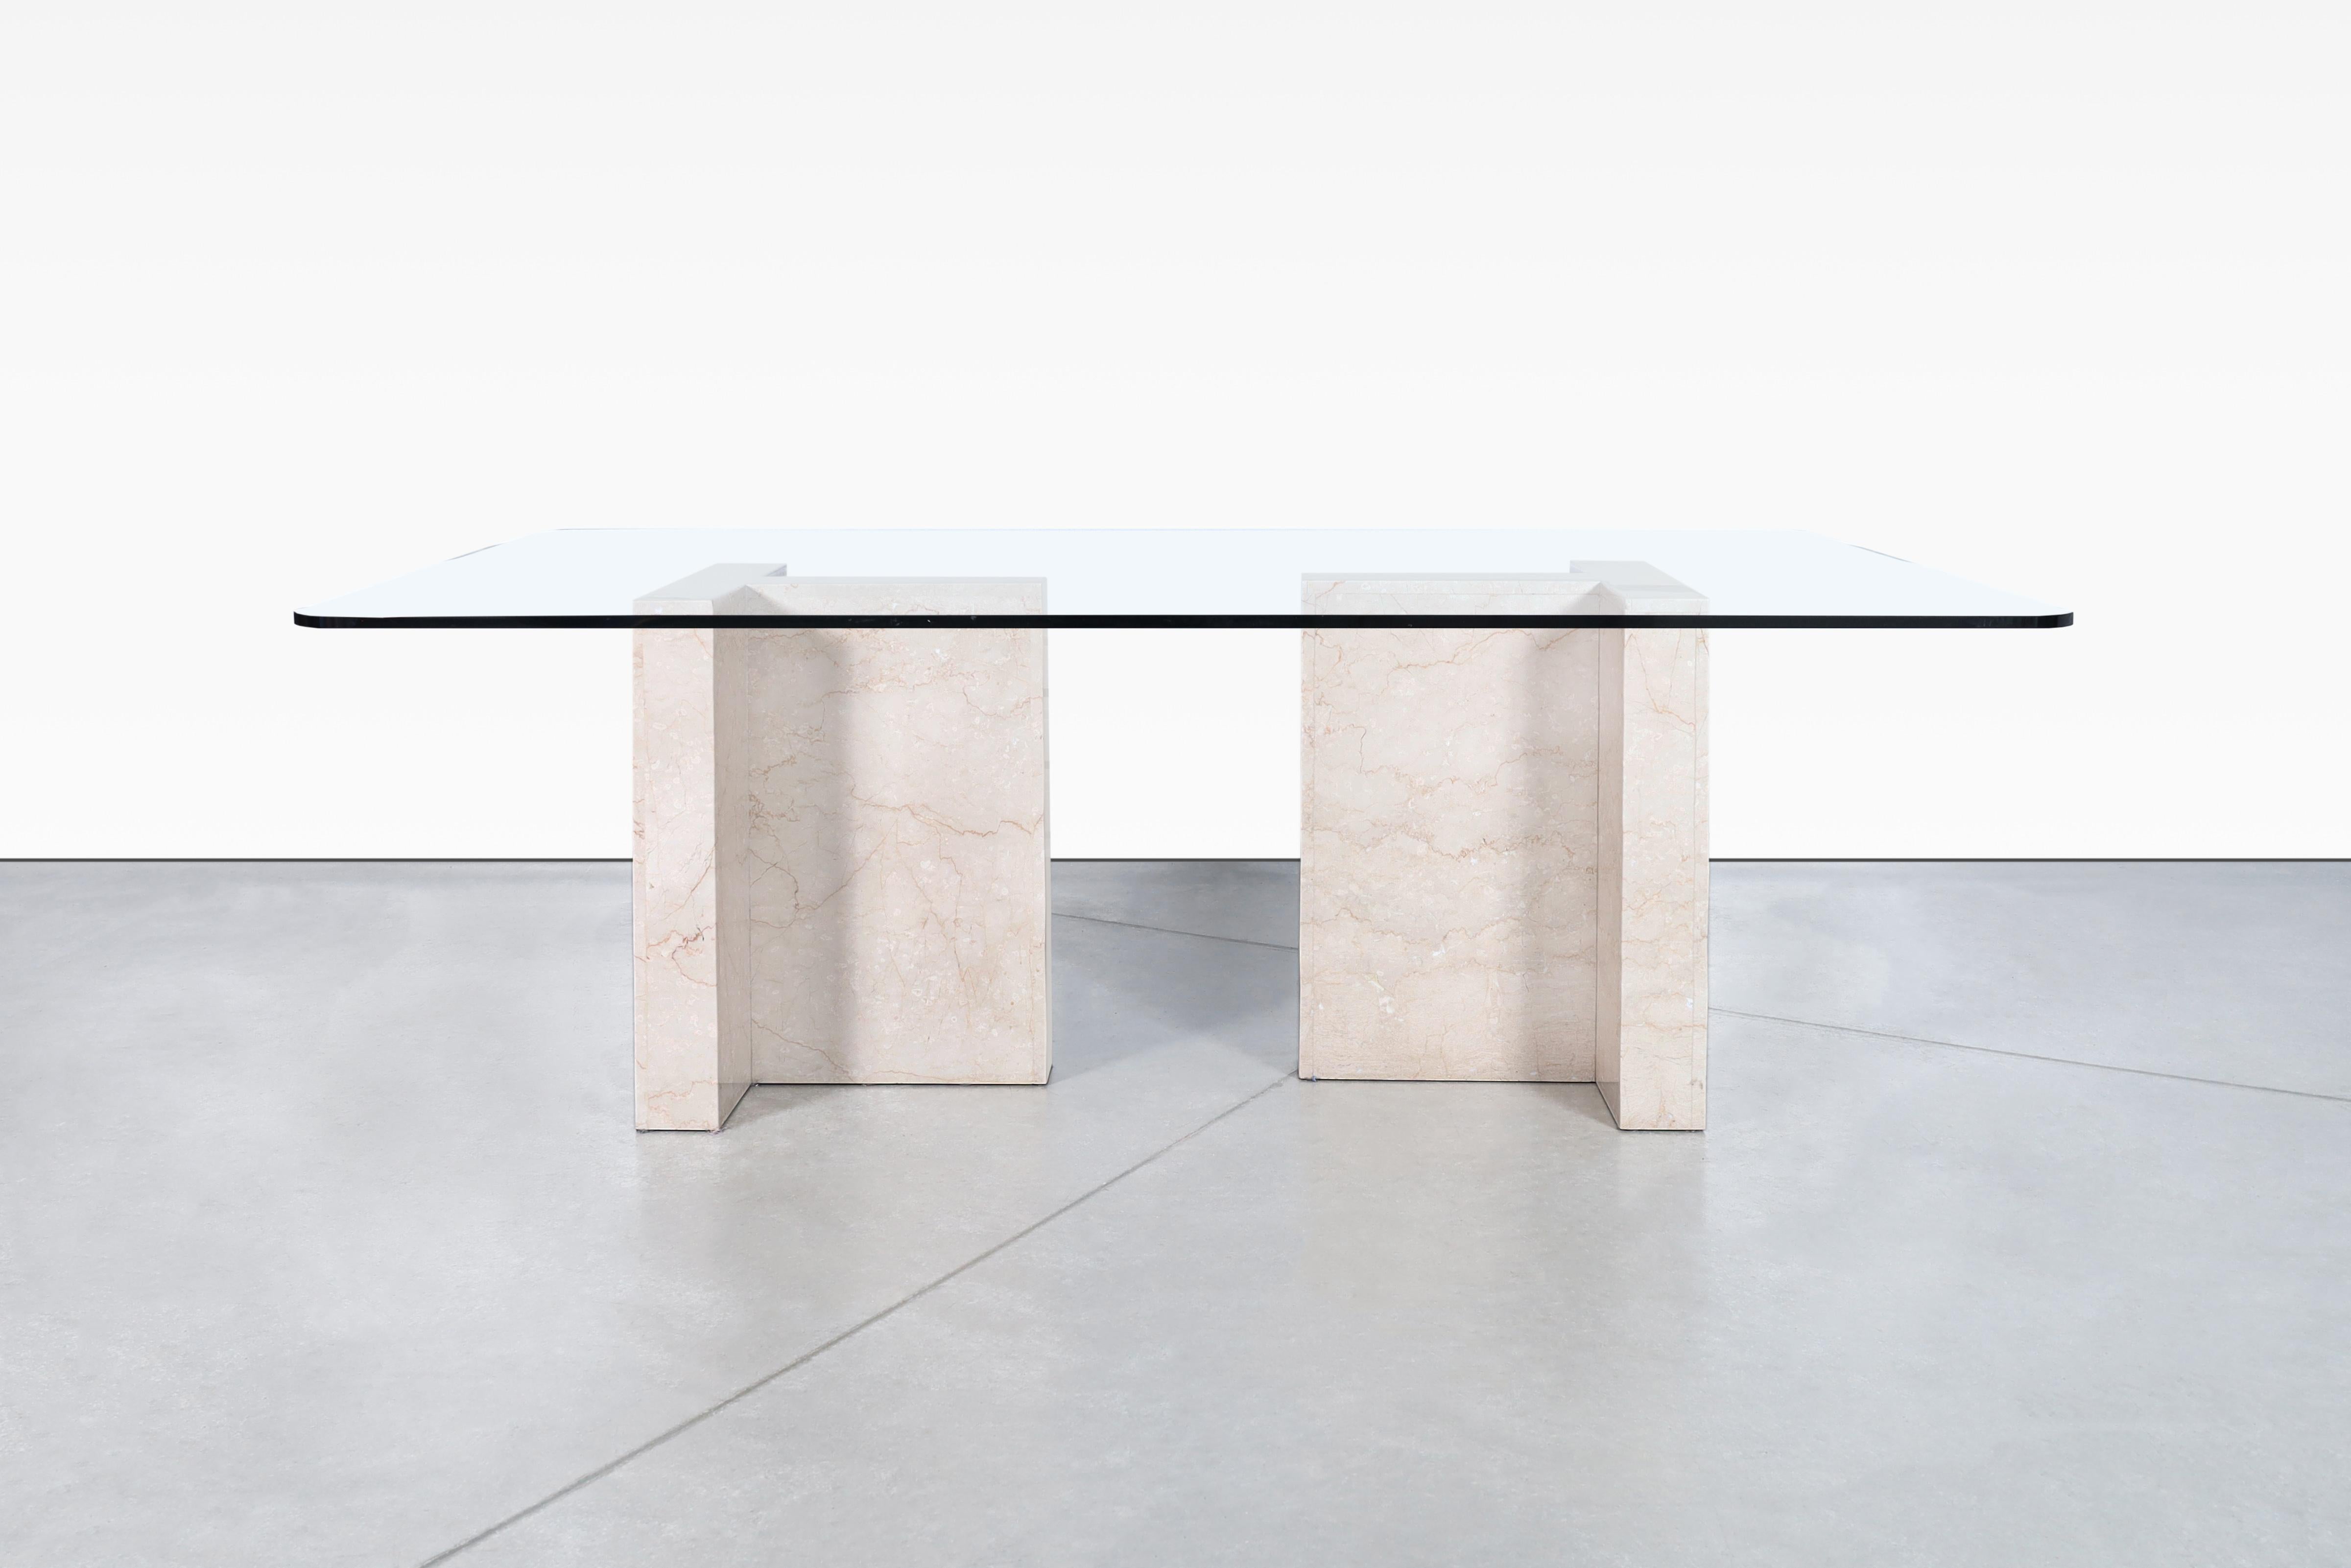 Cette magnifique table de salle à manger en marbre italien des années 1980 présente un design unique et élégant. La table est dotée de deux solides bases en marbre, qui ont la forme d'un AT&T et présentent des veines complexes qui ajoutent au charme